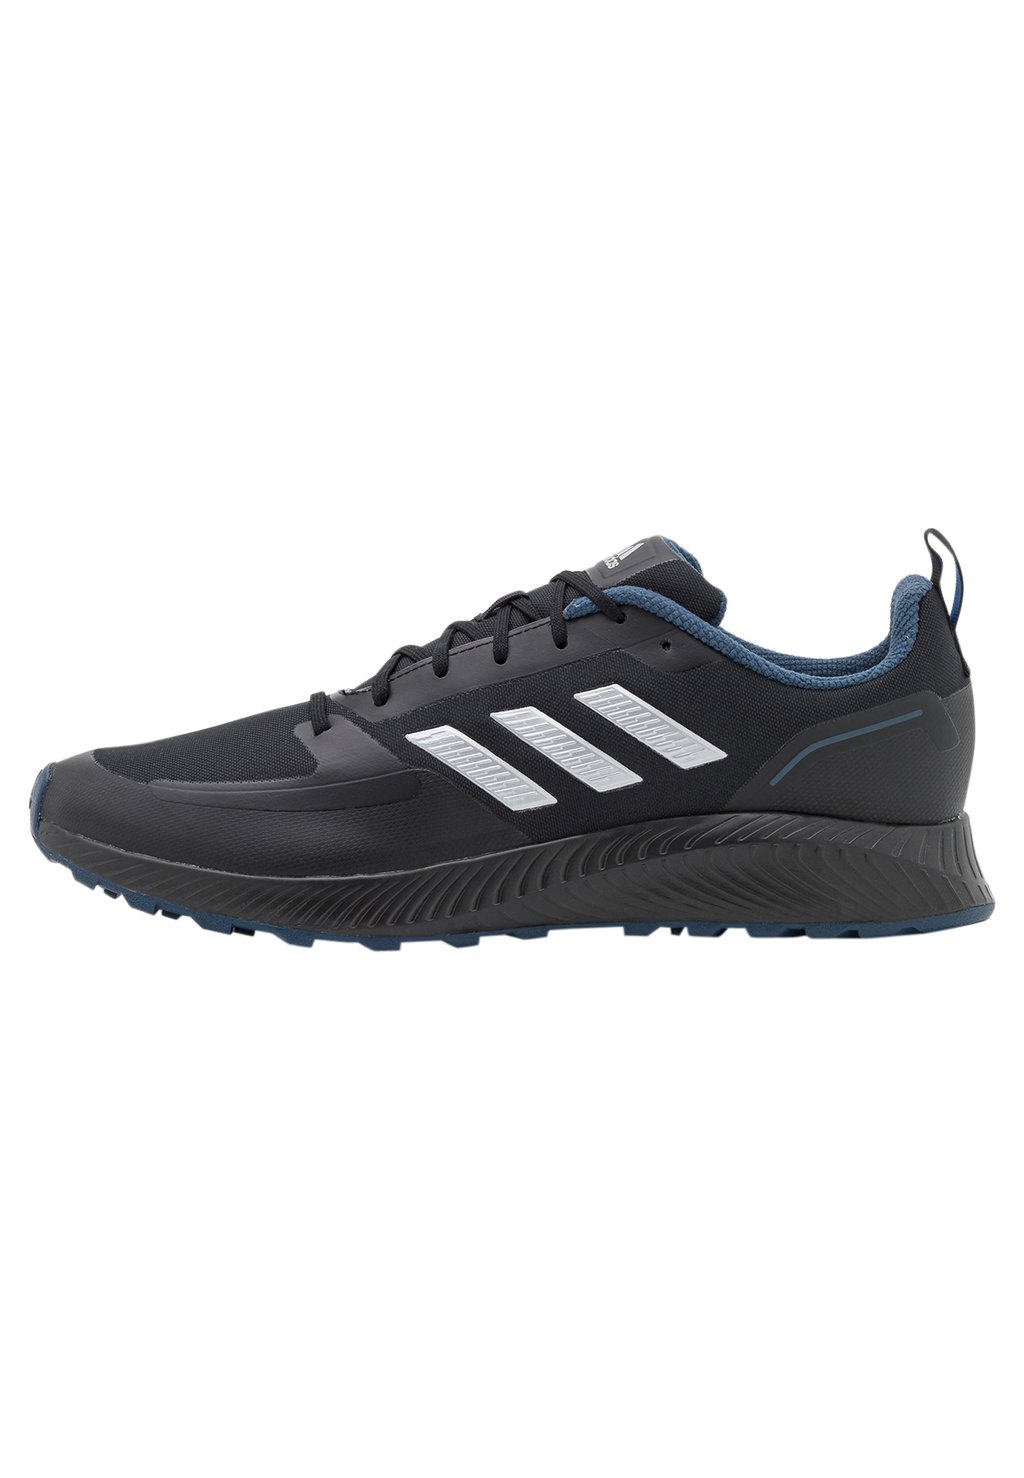 кроссовки нейтрального цвета Runfalcon 2.0 Tr Adidas, цвет core black/silver metallic/crew navy